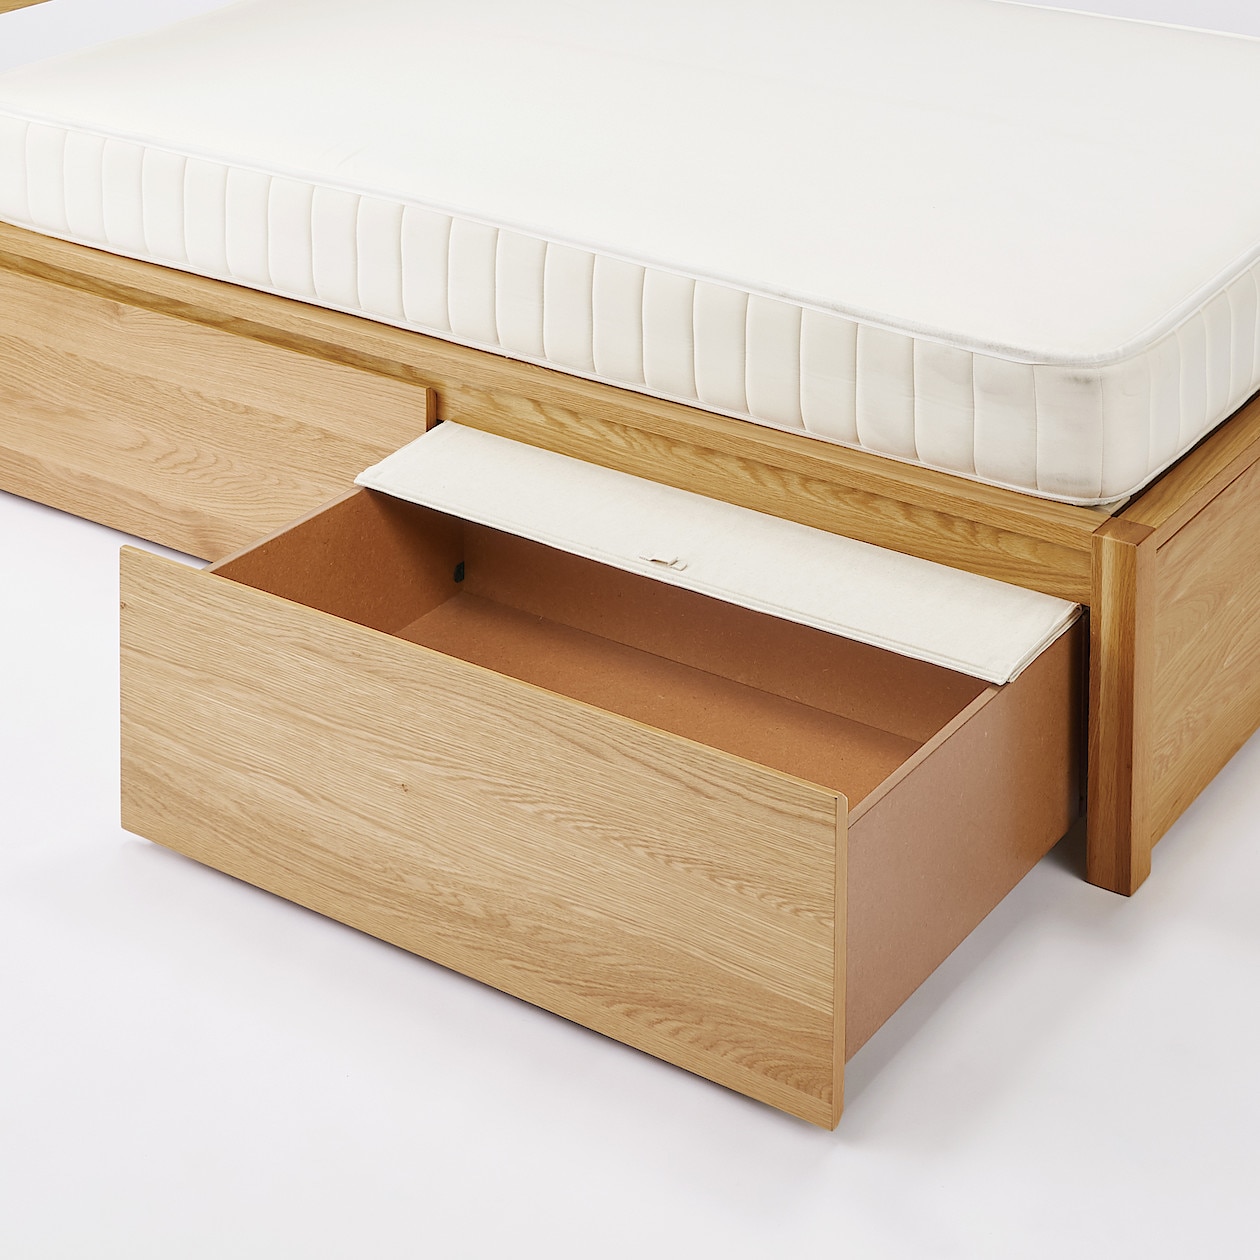 ポリエステル綿麻混・木製ベッド・オーク材用ベッド下収納ふた